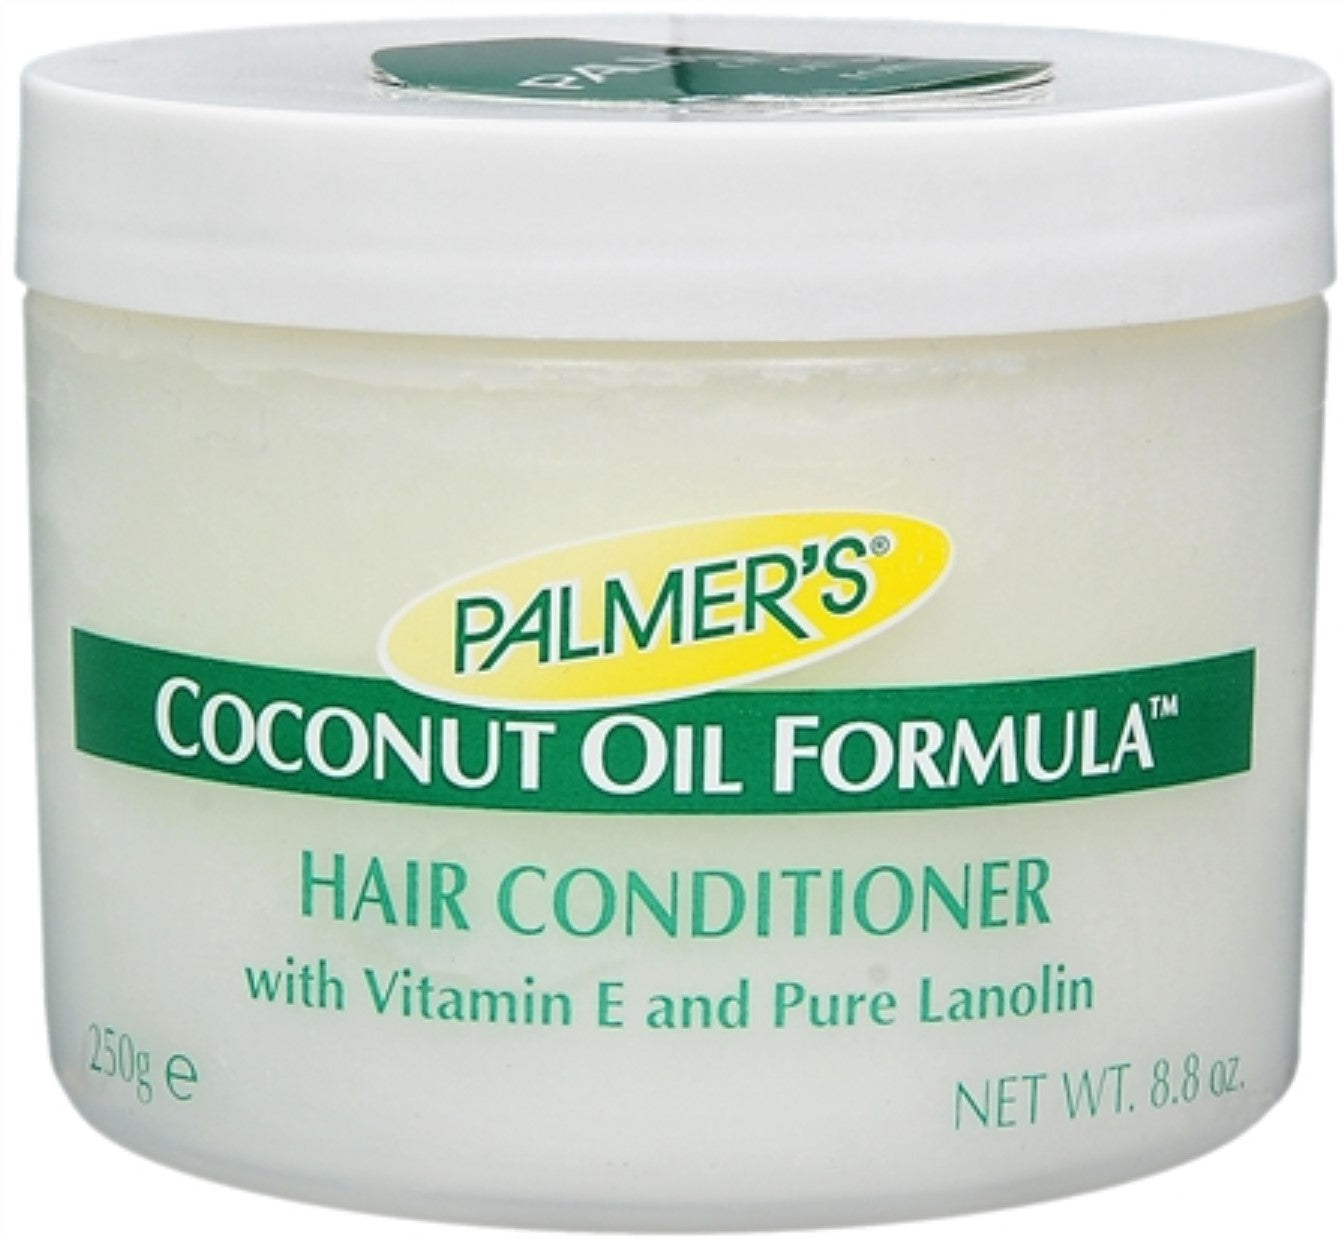 Palmer's Coconut Oil Formula Conditioner